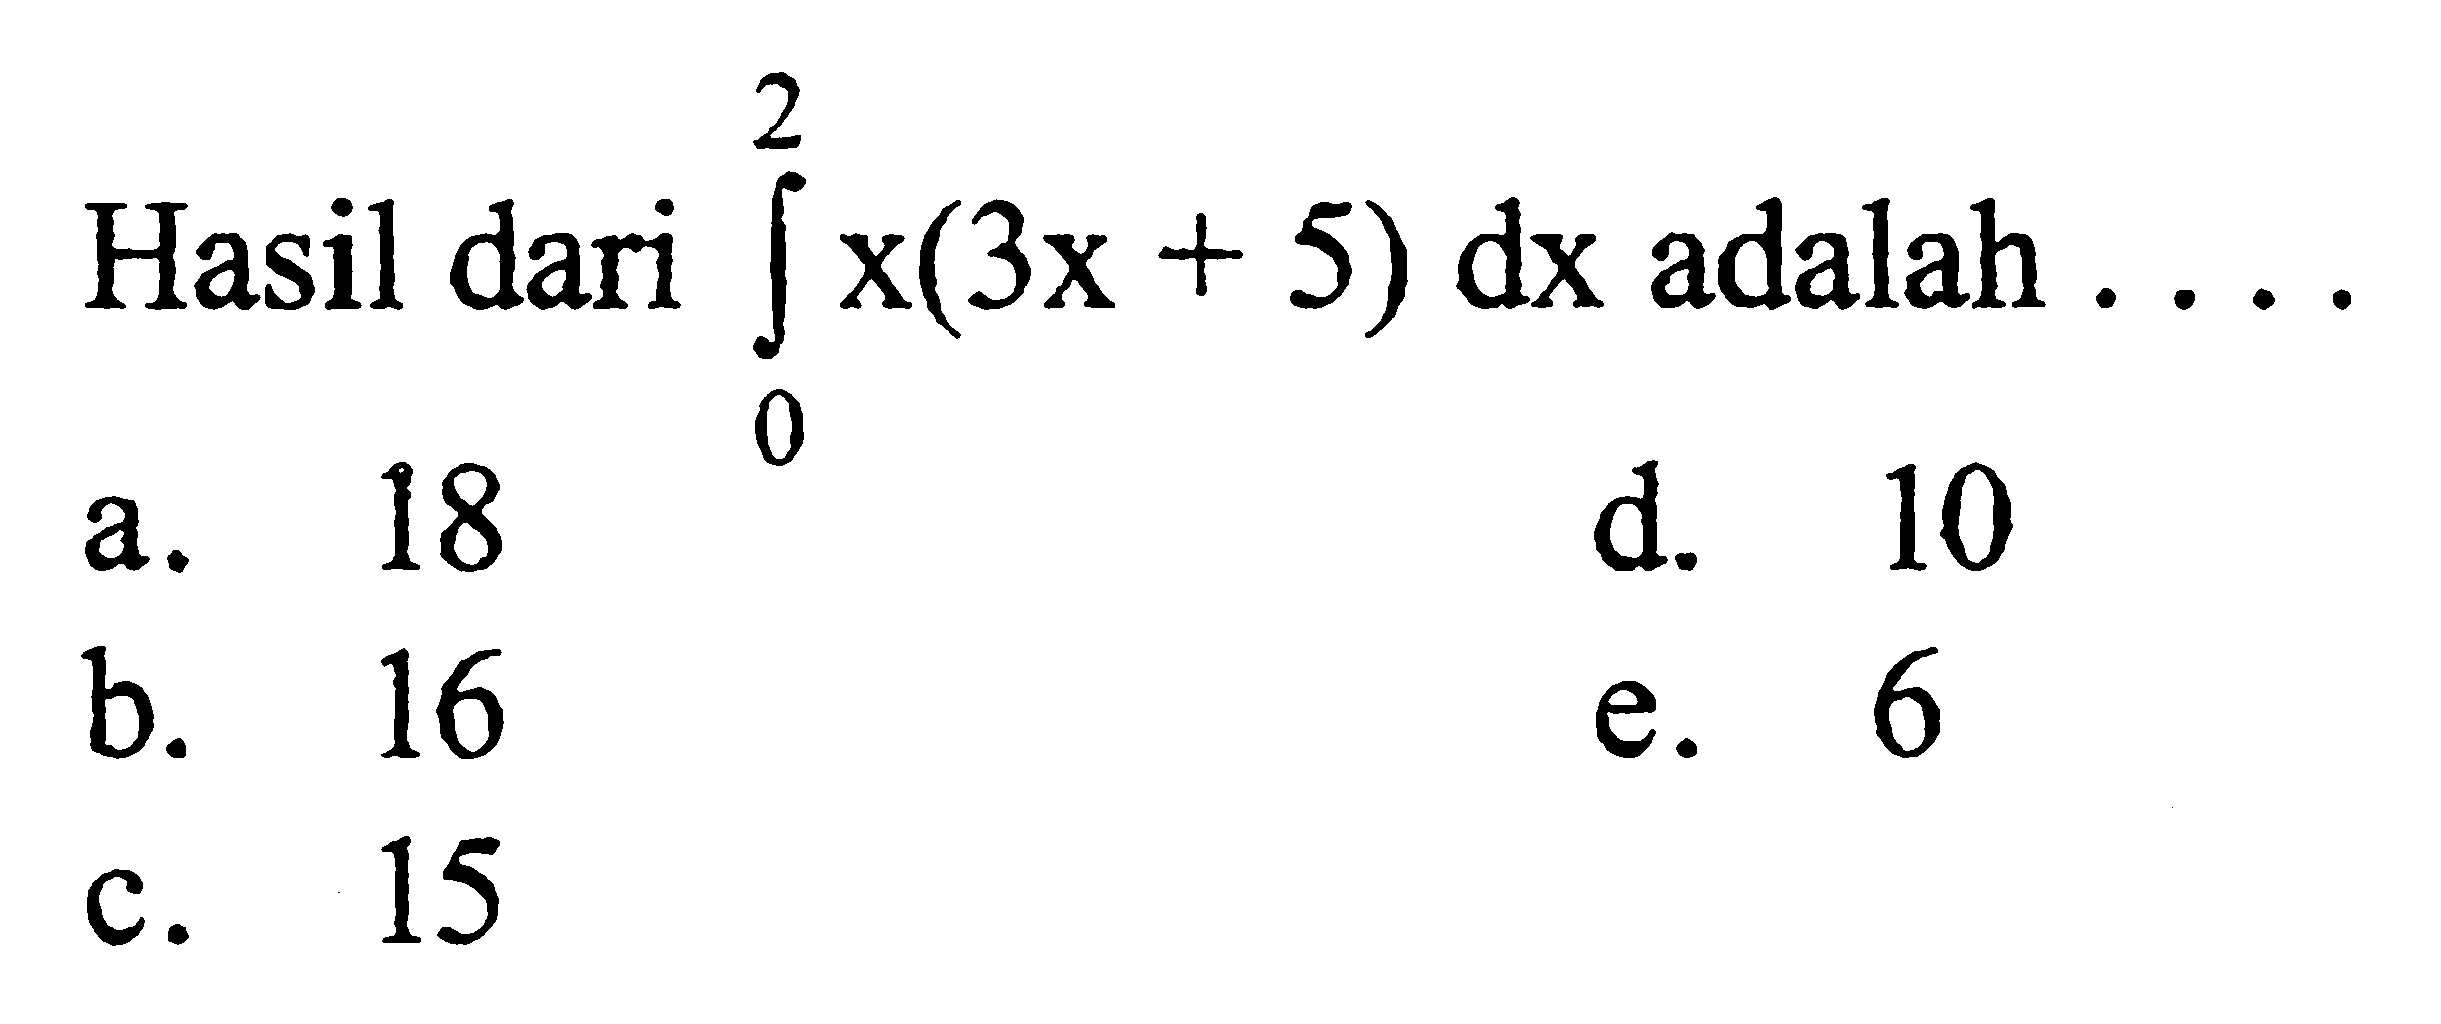 Hasil dari integral 0 2 x(3x+5) dx adalah ....